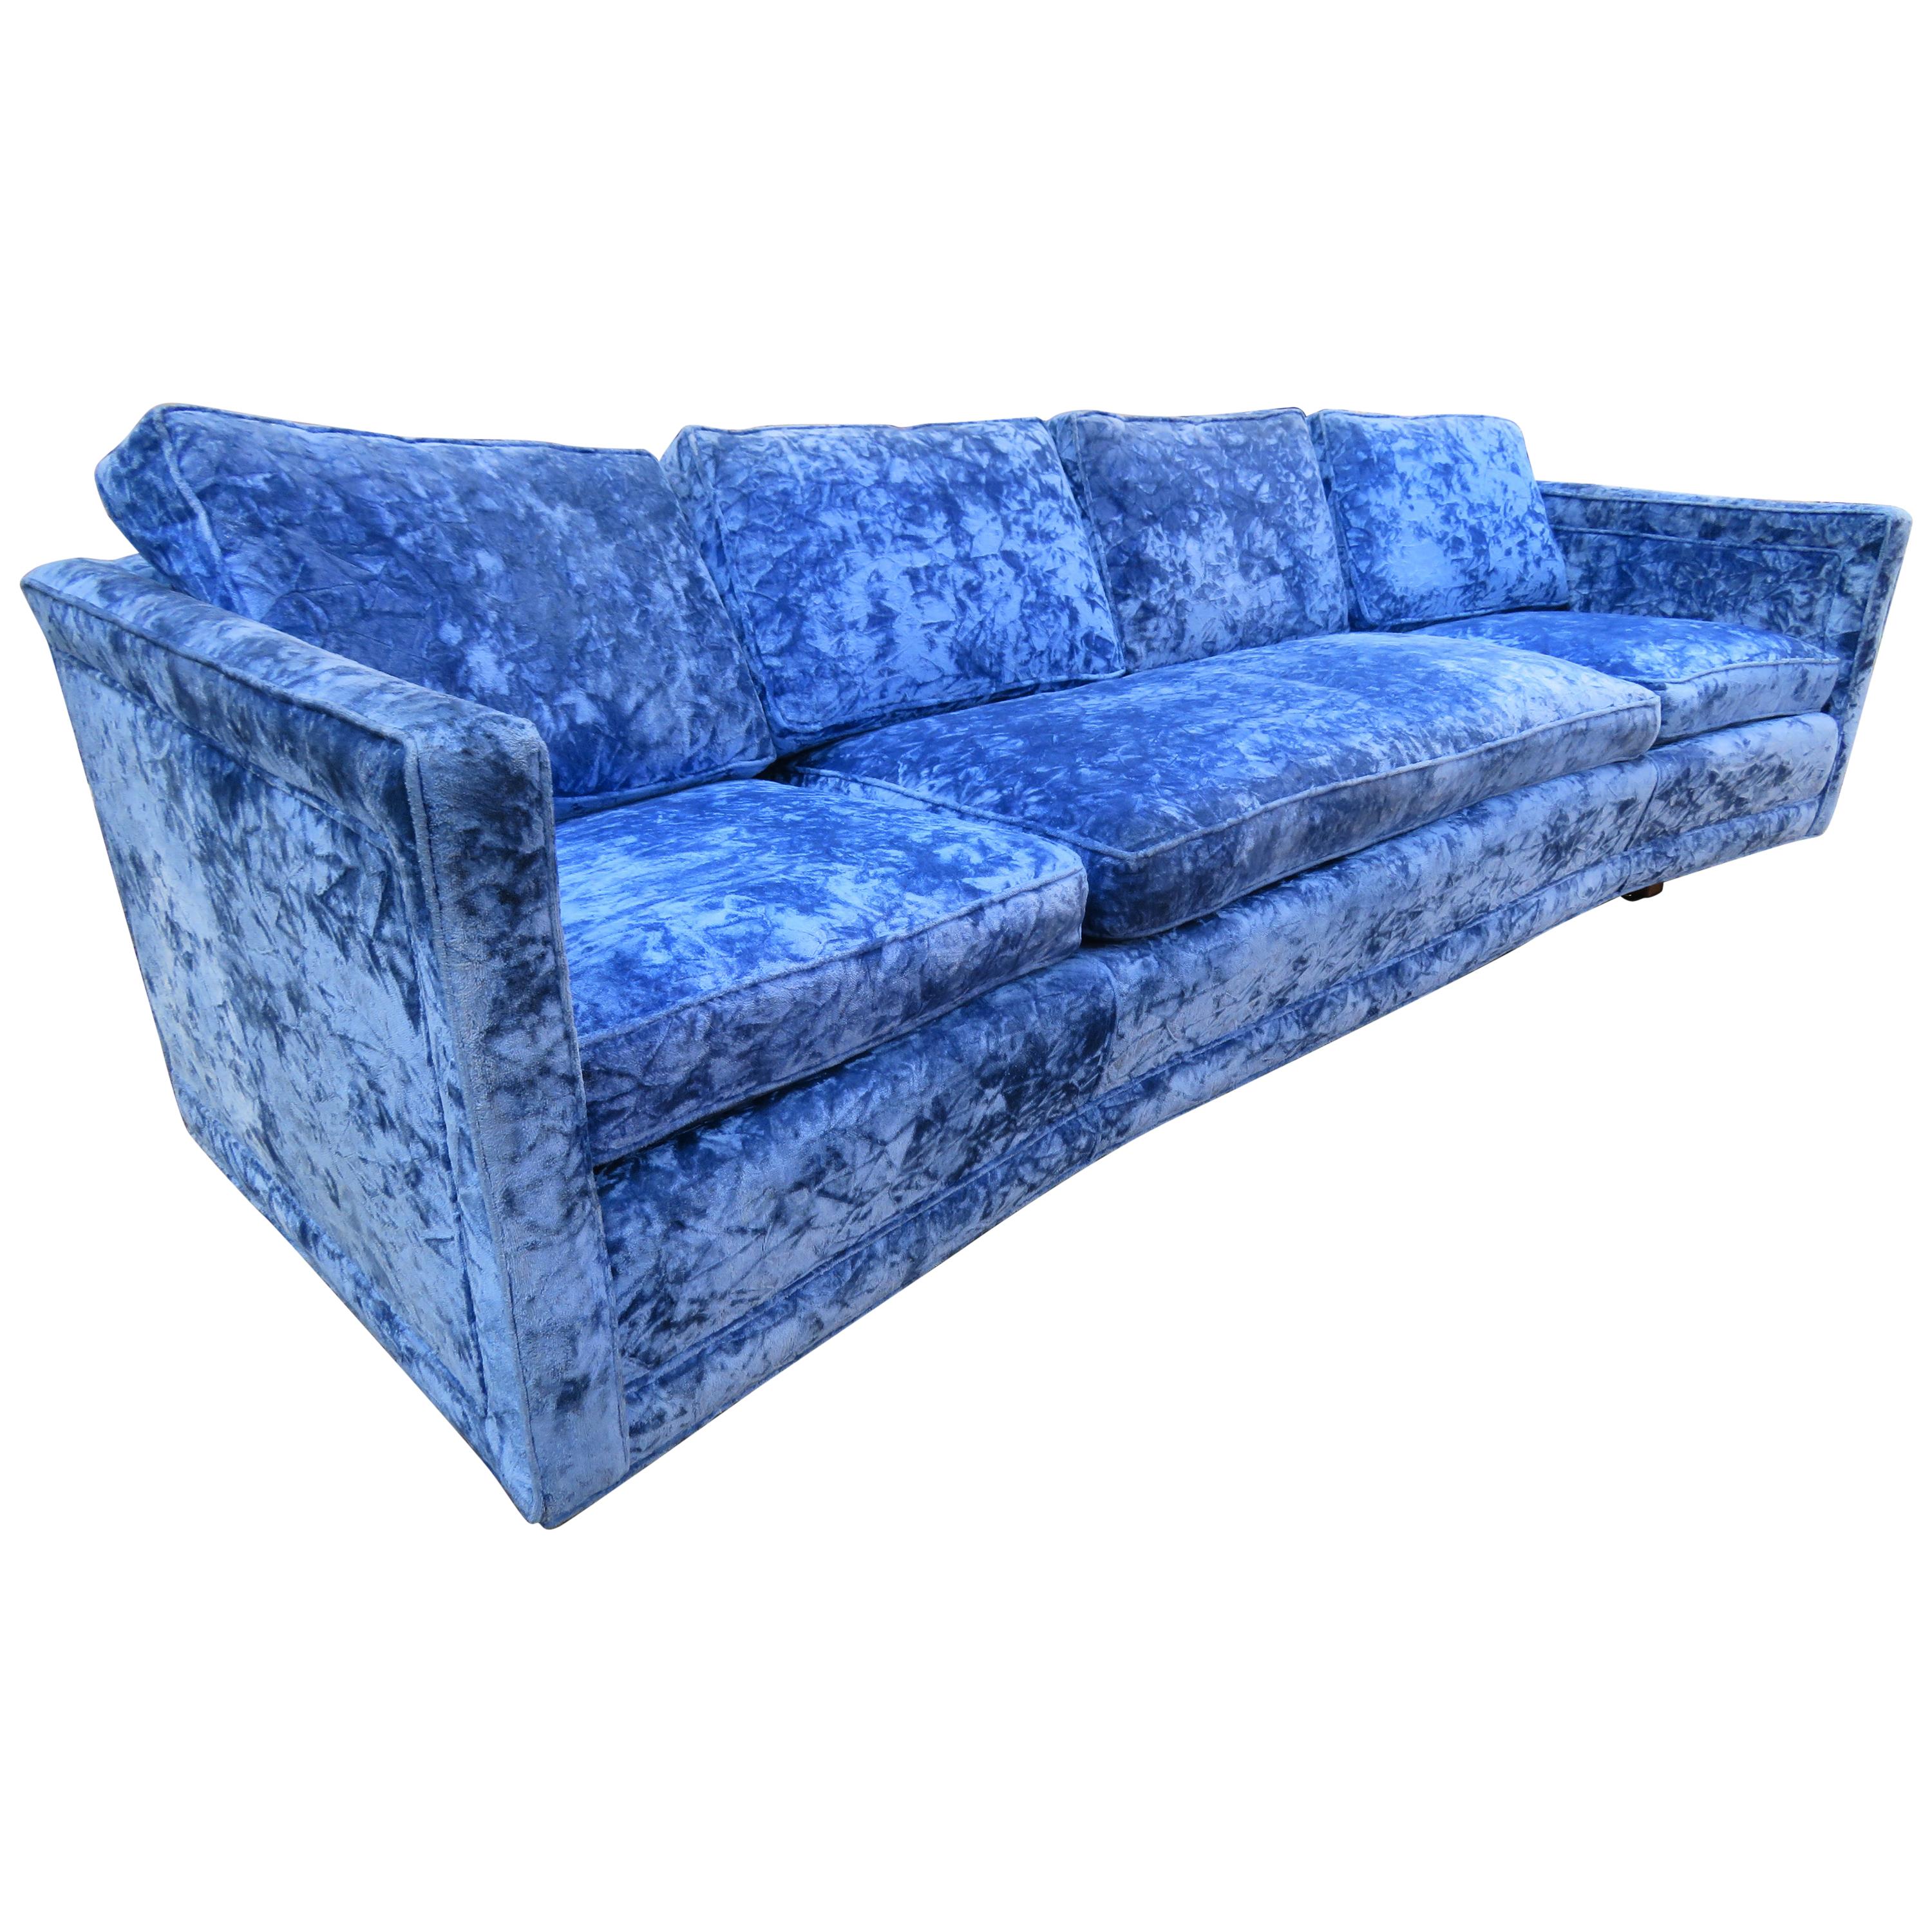 Wunderschönes Erwin Lambeth Sofa mit geschwungener Rückenlehne und Kufengestell. Dieses Sofa wurde vor langer Zeit in diesem wunderbaren saphirblauen Samt neu gepolstert und sieht immer noch großartig aus - mit nur geringen Altersspuren. Wir lieben